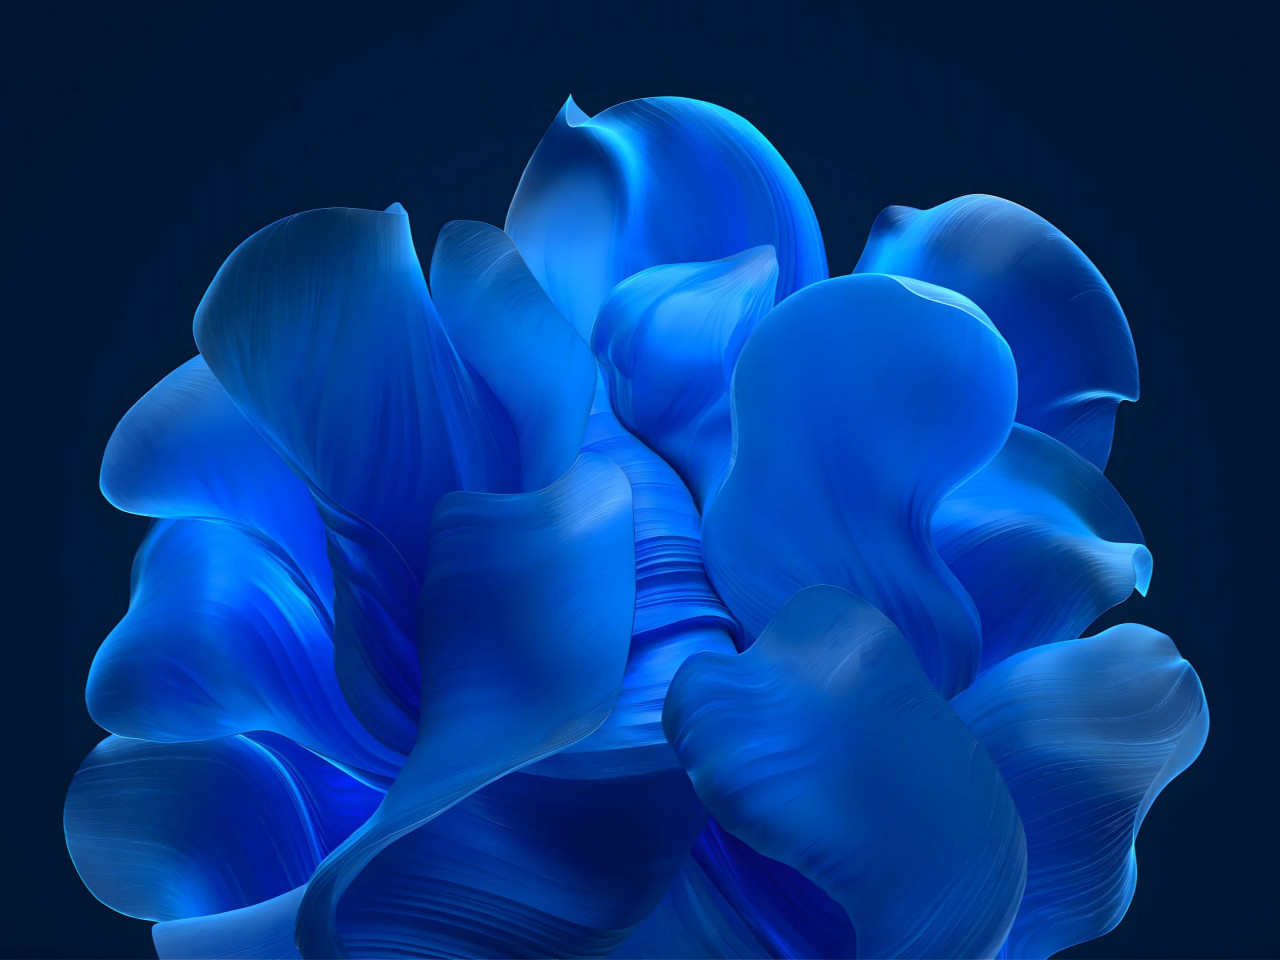 The blue petals wallpaper 1280x960